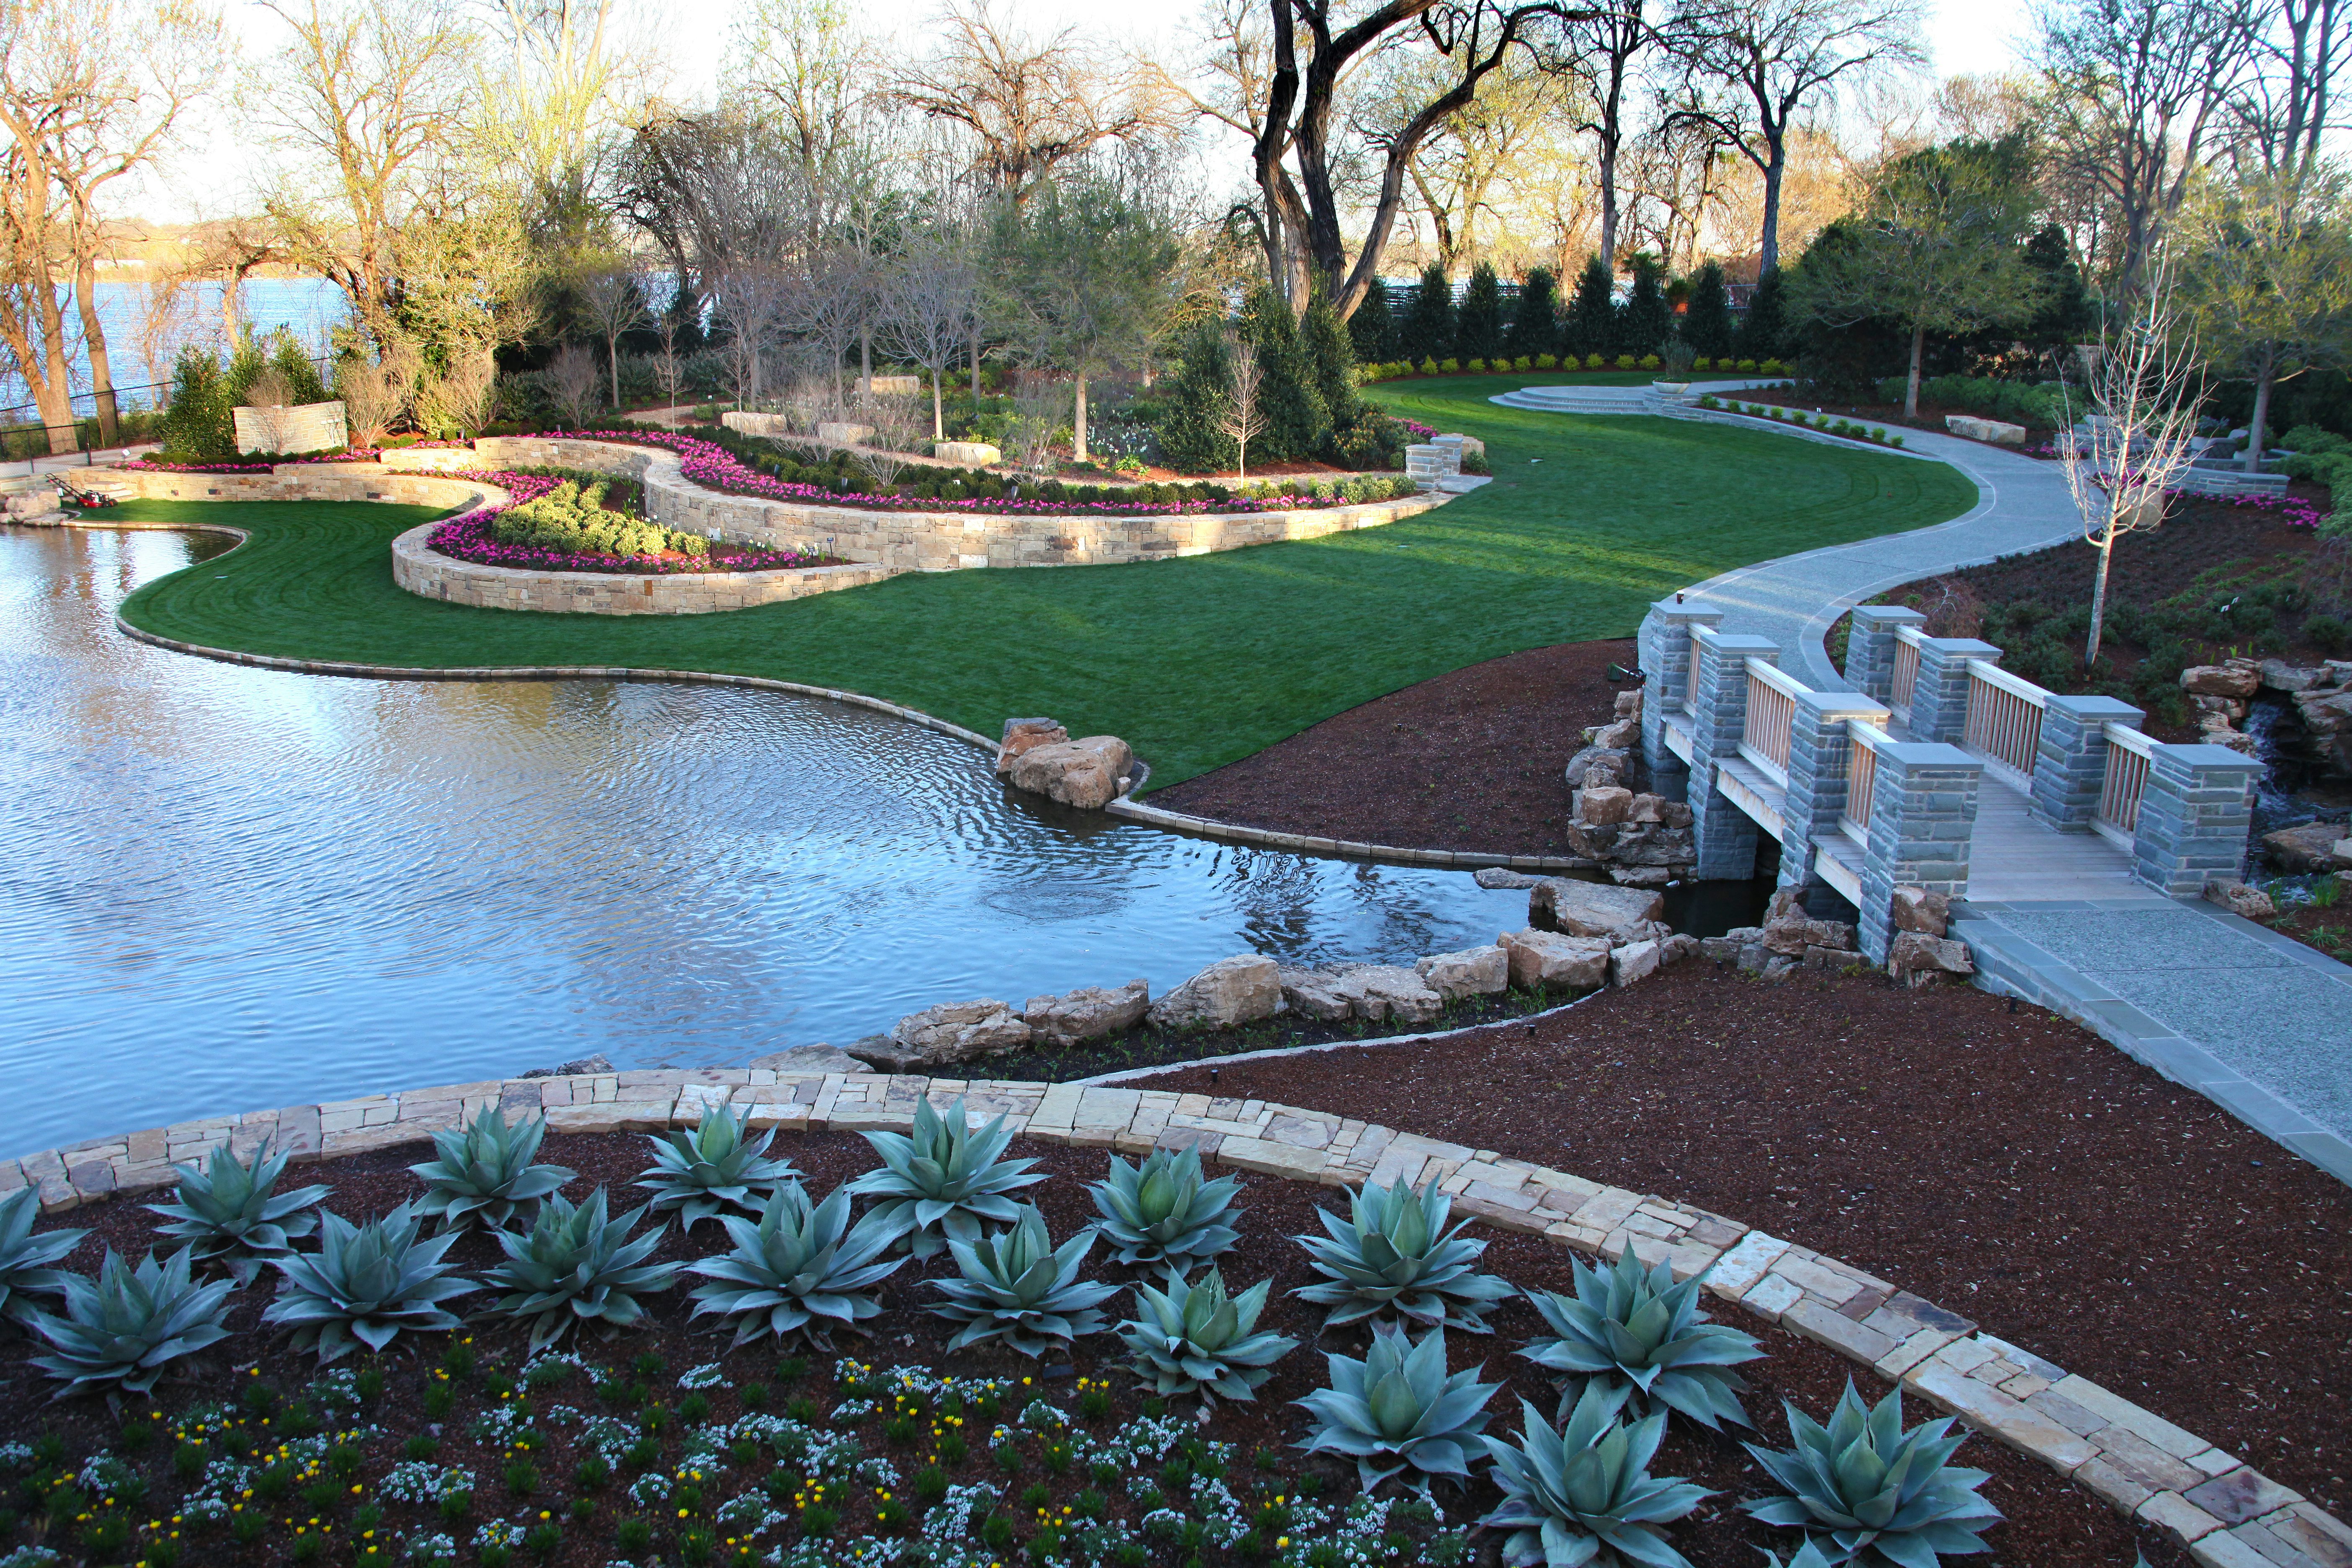 Visit The Dallas Arboretum and Botanical Garden